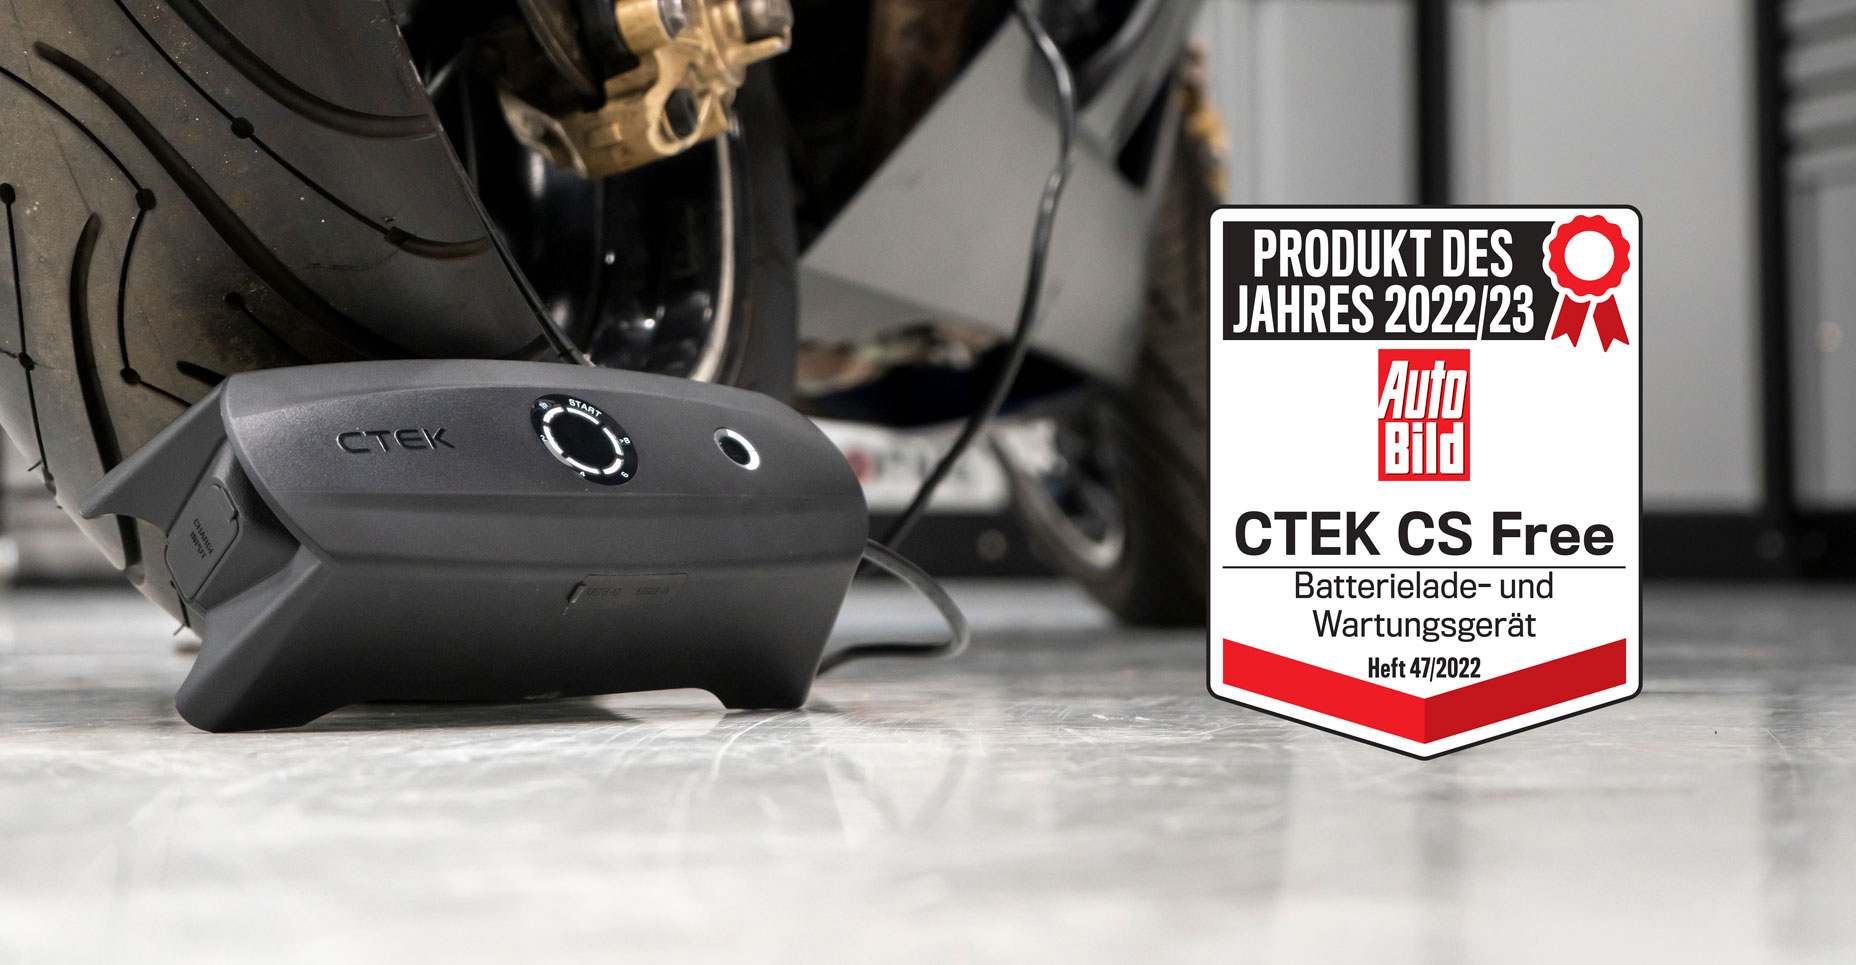 CTEK CS FREE Cargador portátil multifuncional 4 en 1 de 12 V con tecnología de arranque adaptativo, referencia 40-462 - ctek.com